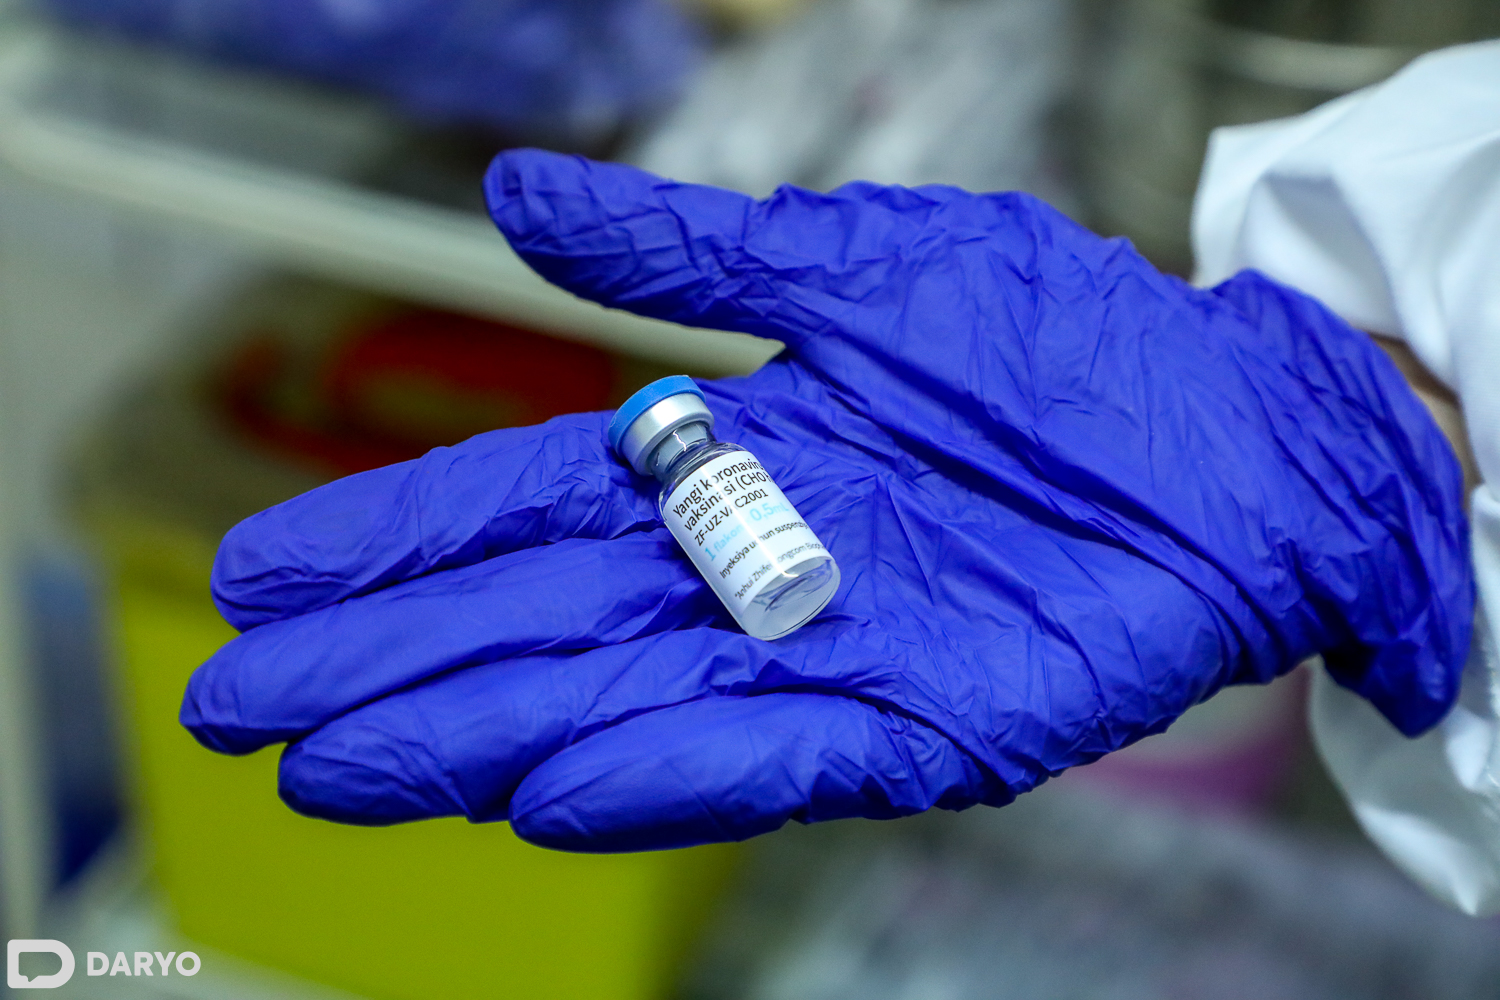 O‘zbekiston–Xitoy hamkorligida ishlab chiqilgan ZF-UZ-VAC 2001 vaksinasi.